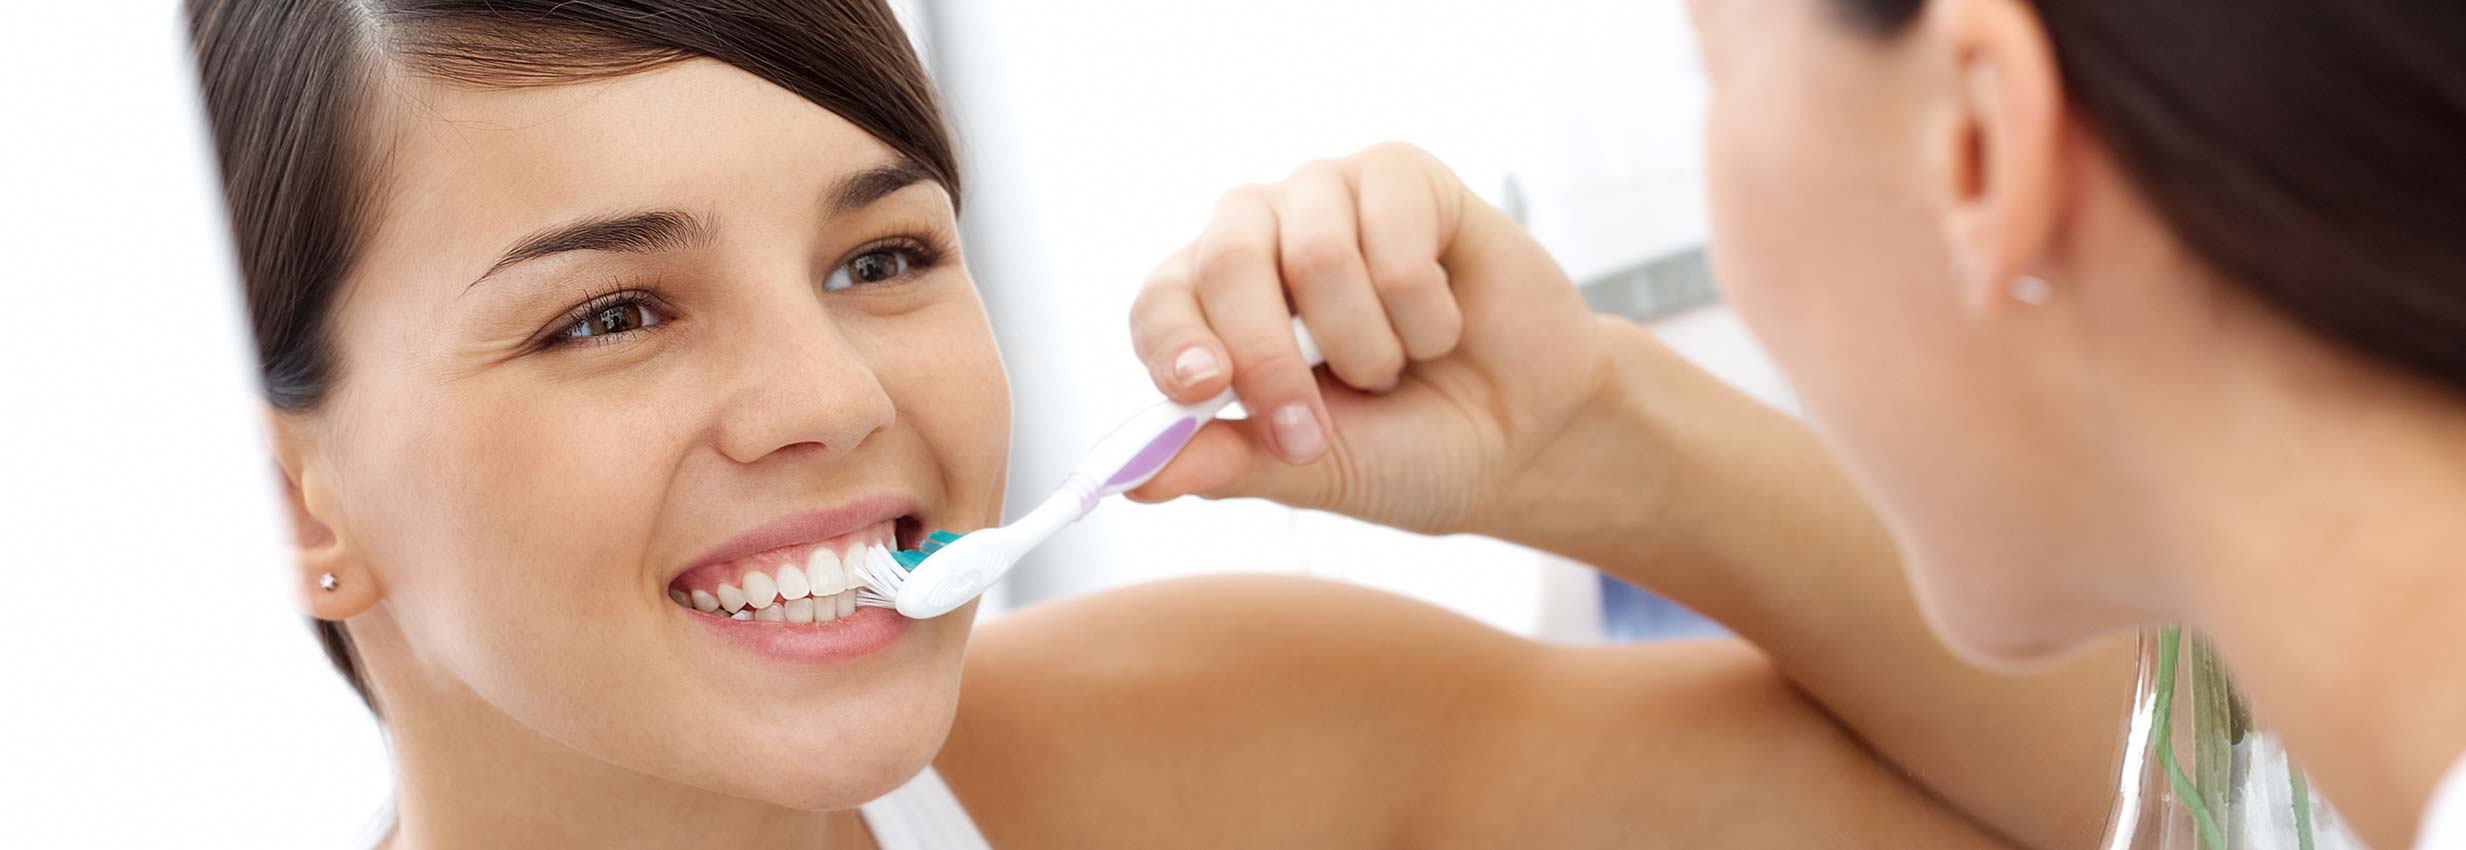 Igiene orale a Verona | Studio dentistico a Verona | Studio dentistico Muraro